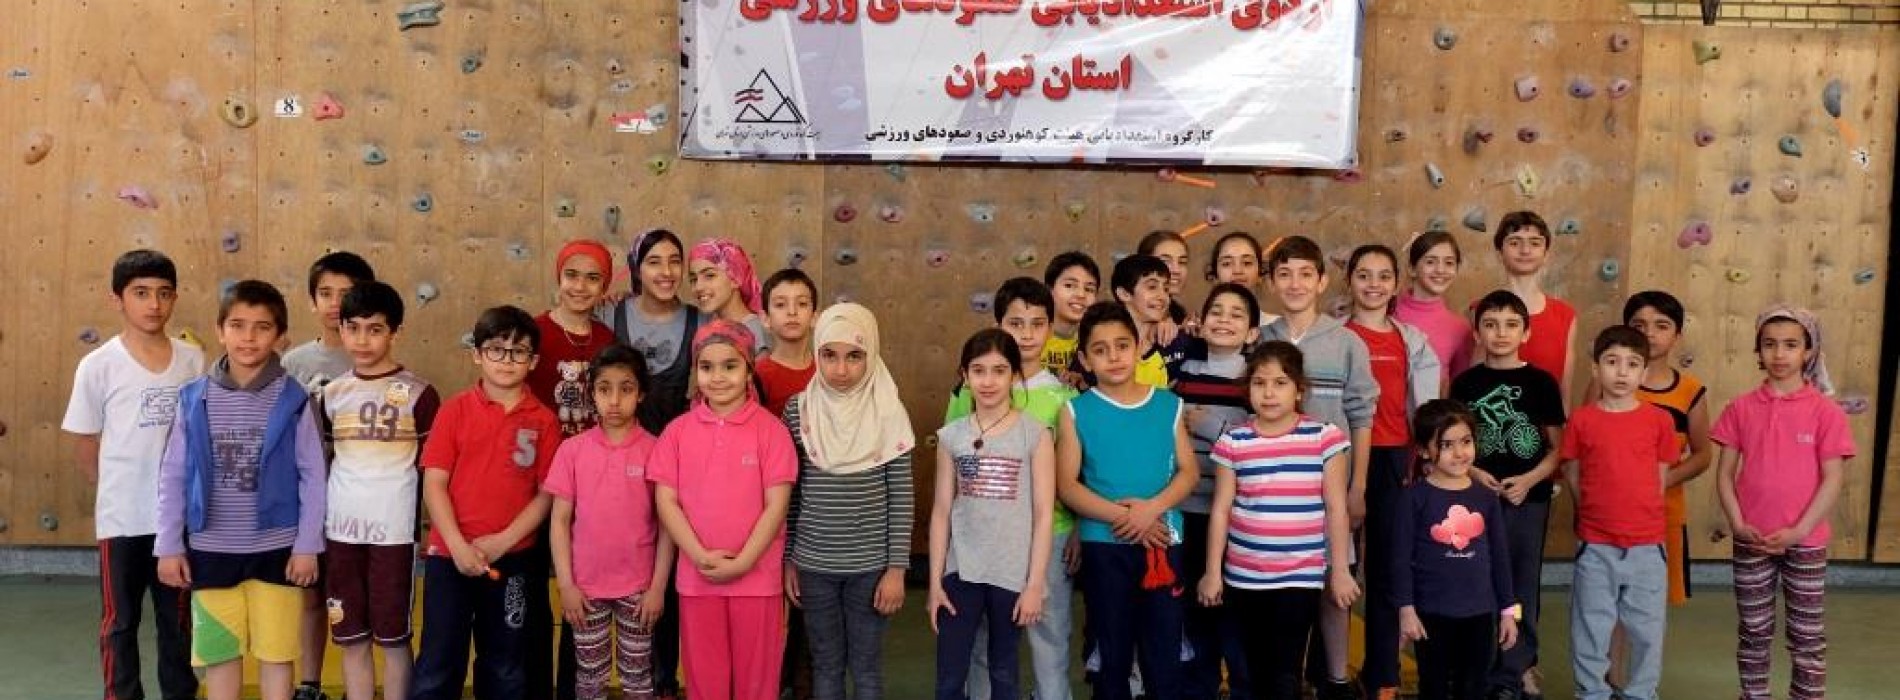 تهران: برگزاری اولین اردوی استعدادیابی صعودهای ورزشی استان تهران